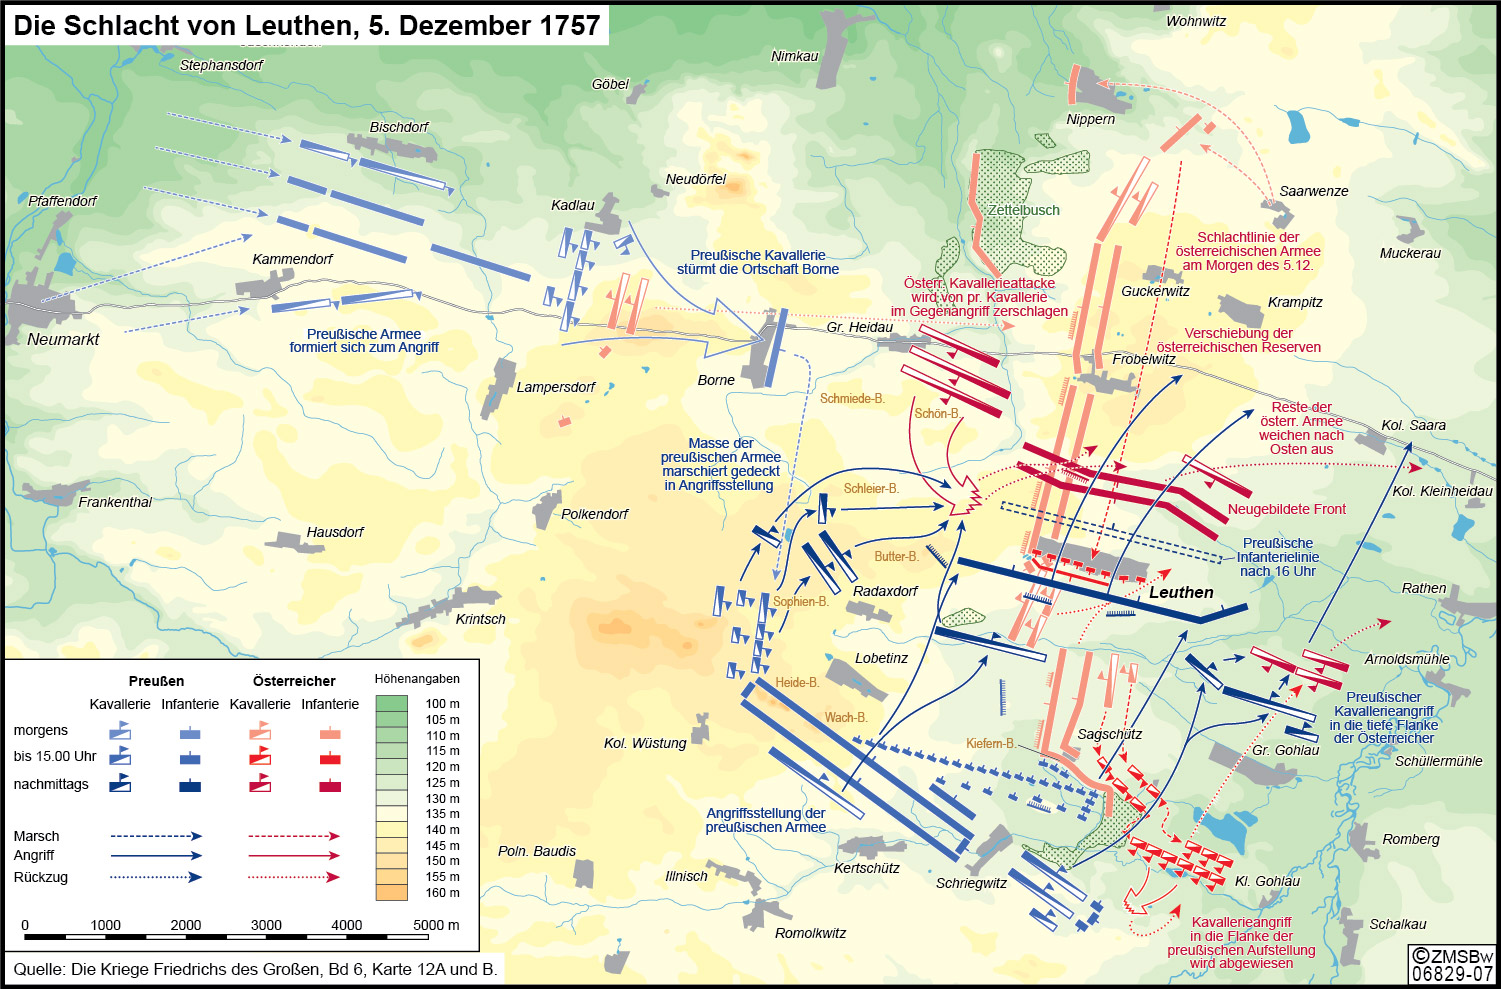 Darstellung der Kampfhandlungen durch rote Linien für die Österreicher und blaue Linien für die Preußen